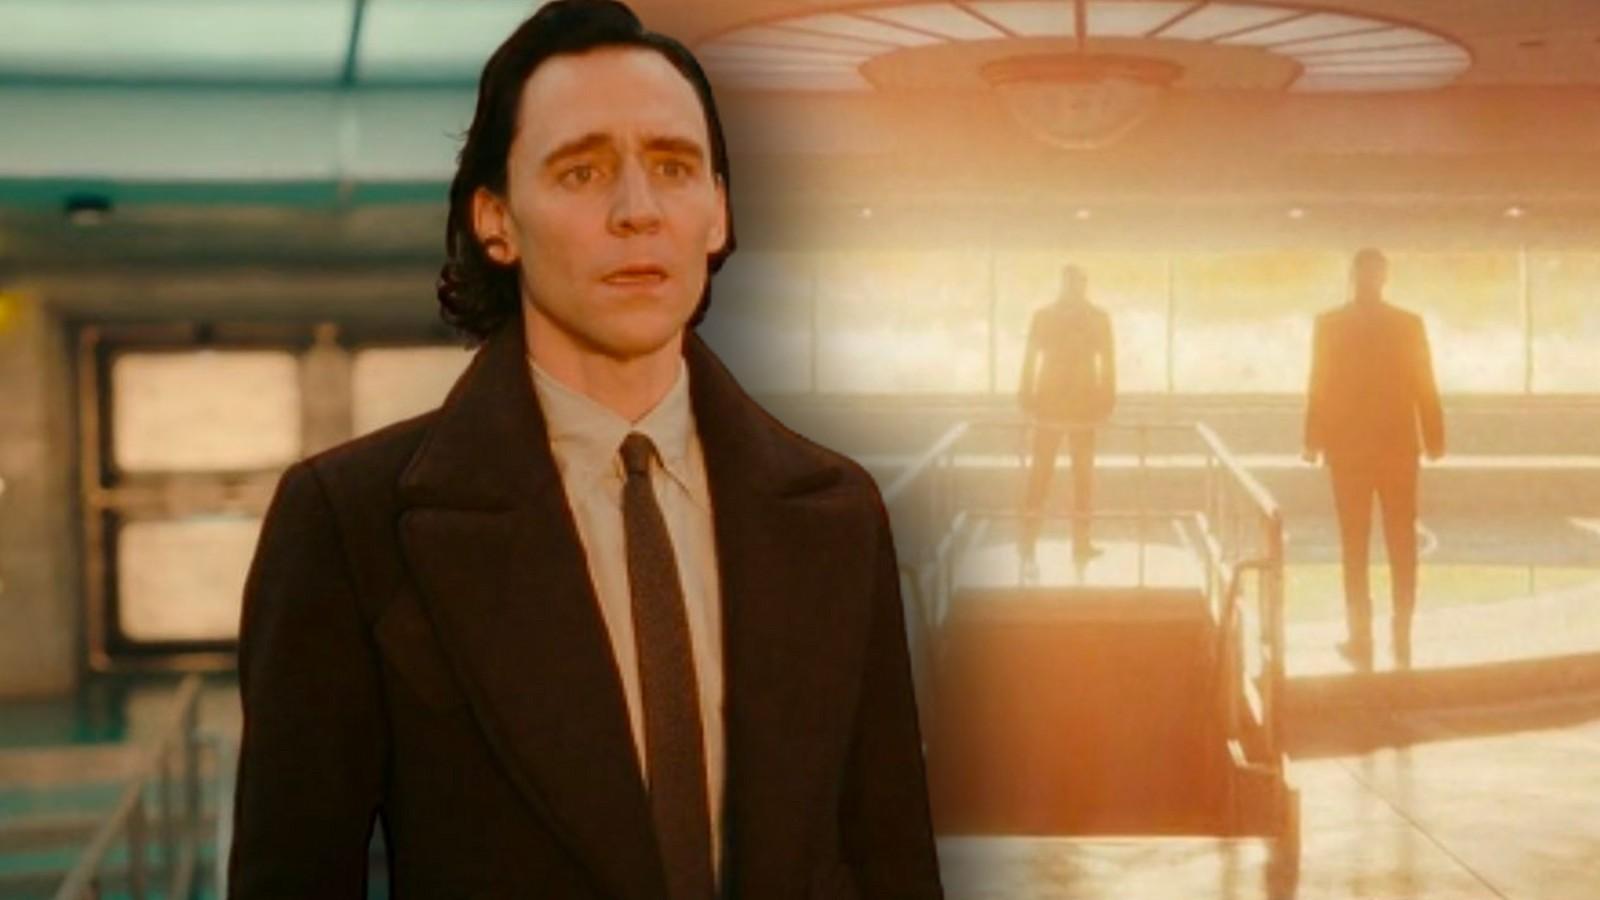 Is Loki Dead? S2 Episode 4 Ending Explained